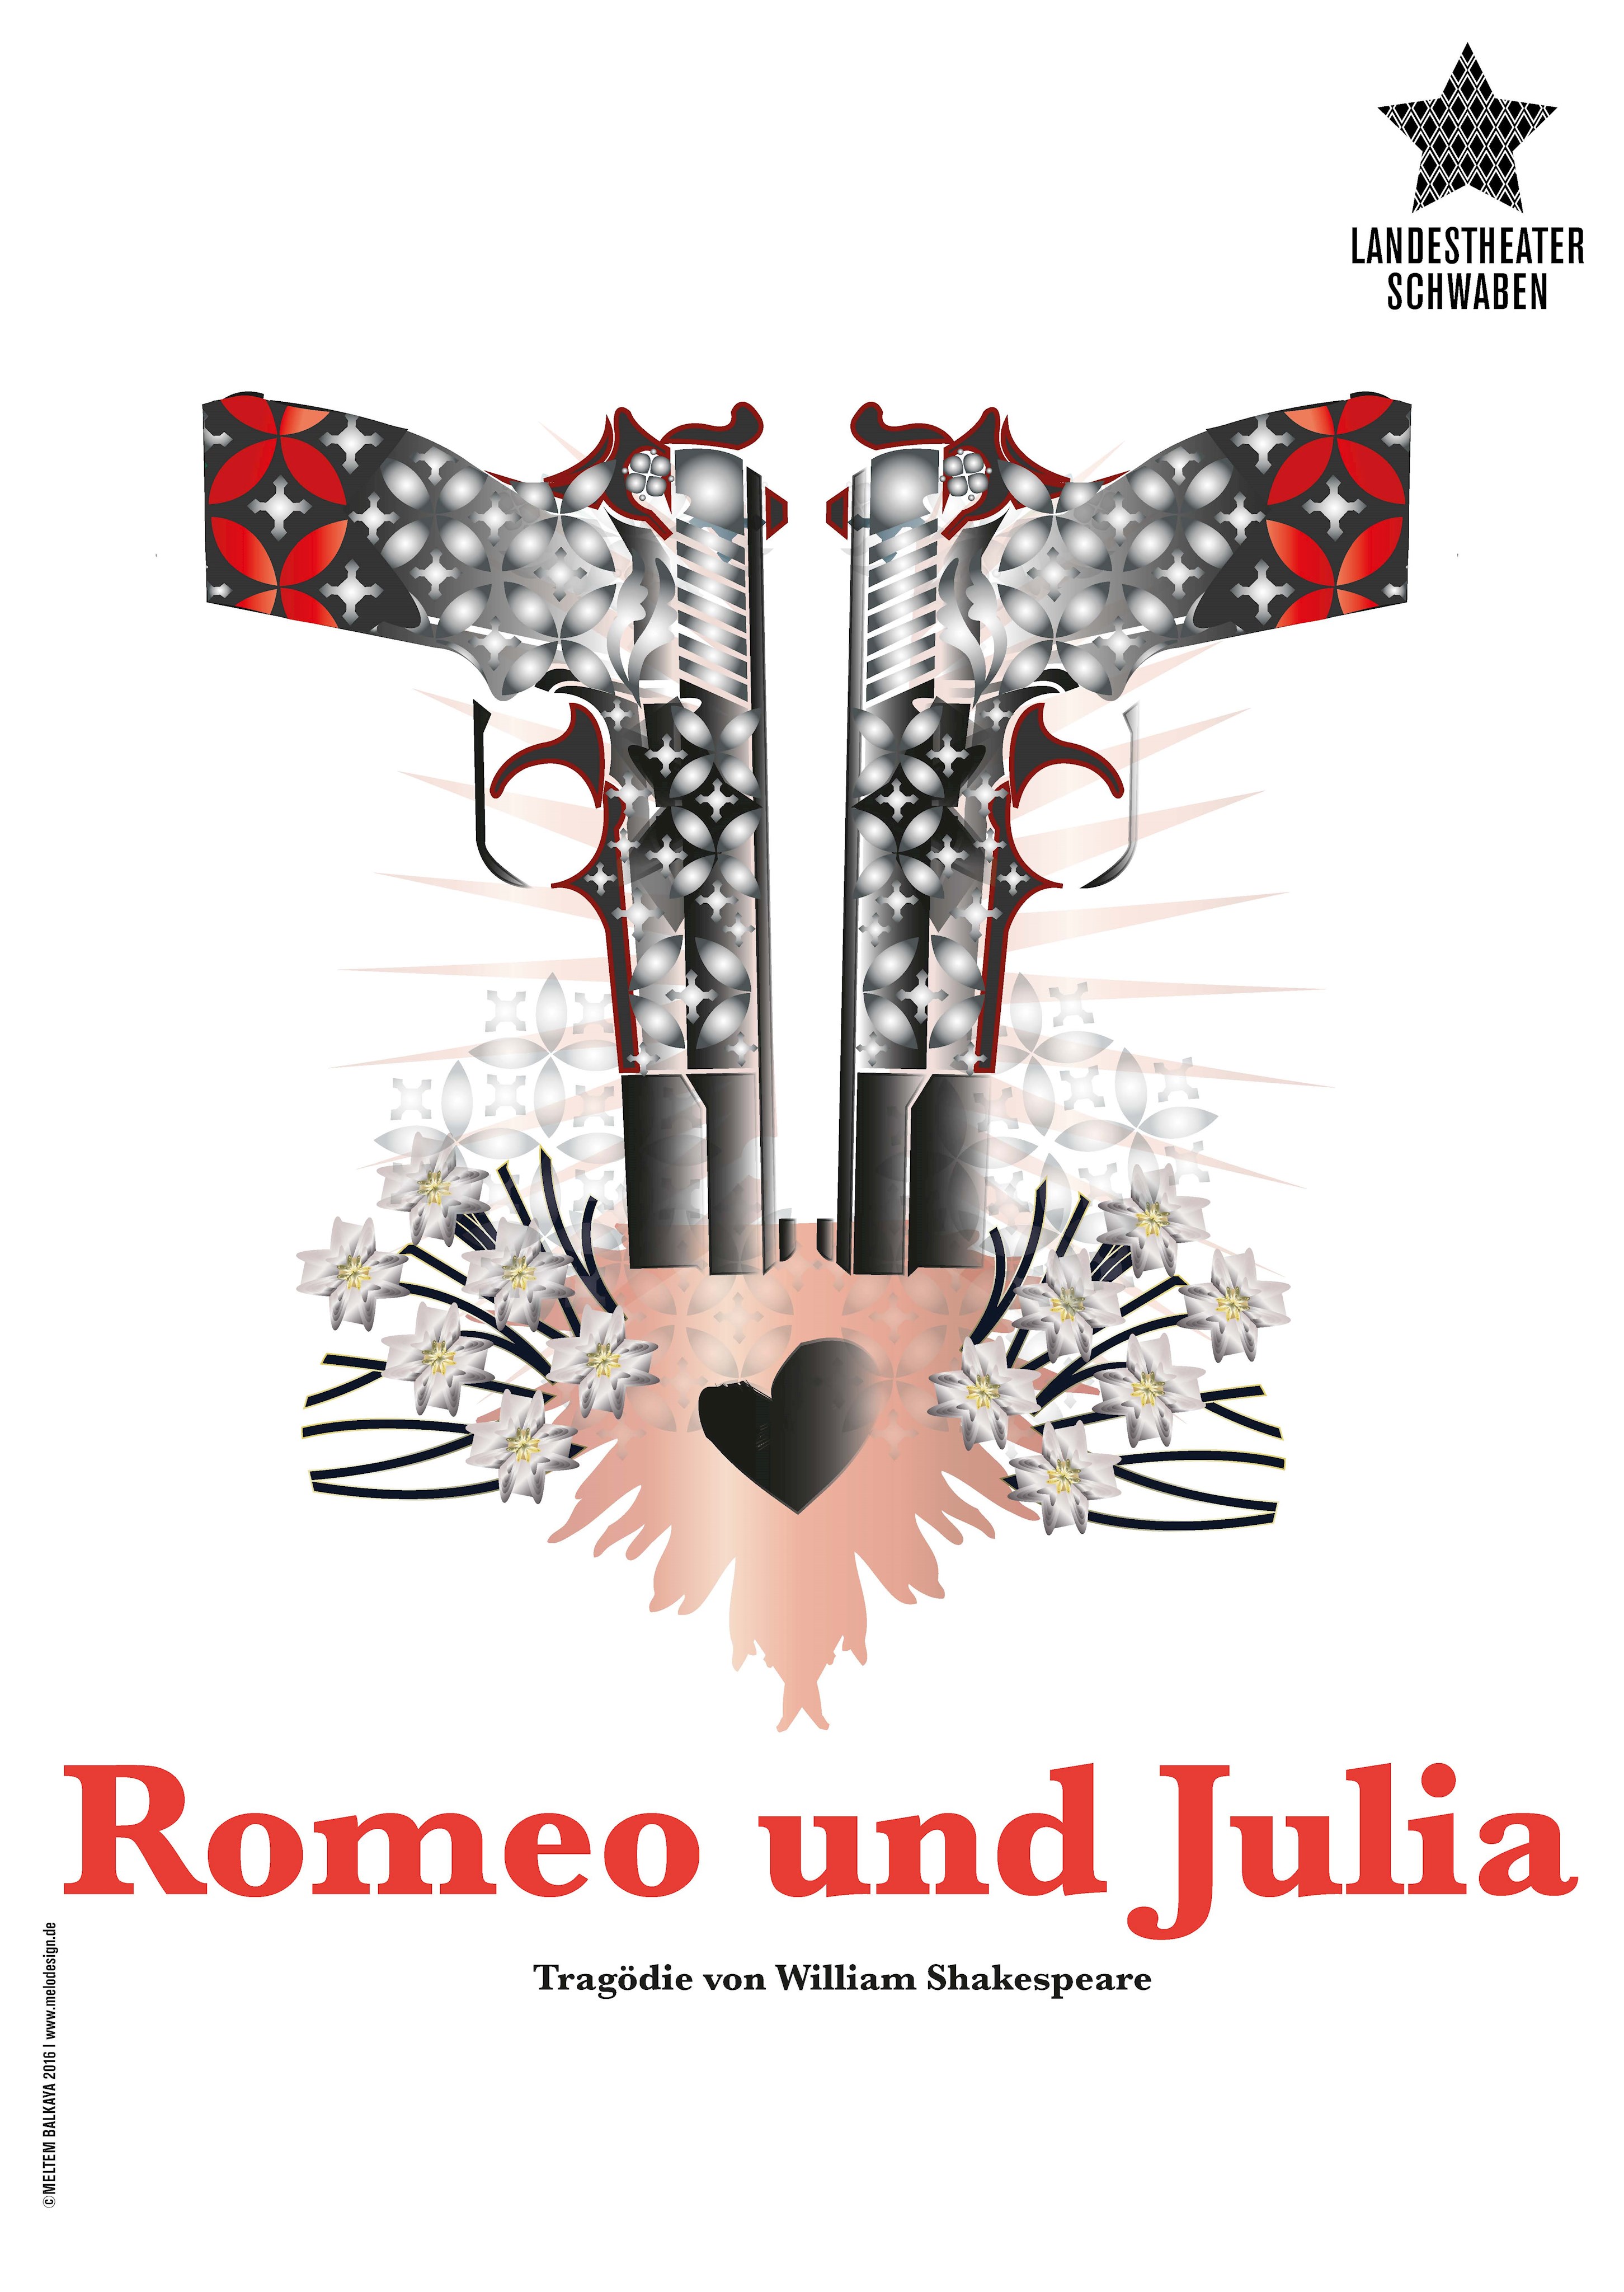 Das Plakat des Landestheaters Schwaben zu Romeo und Julia.